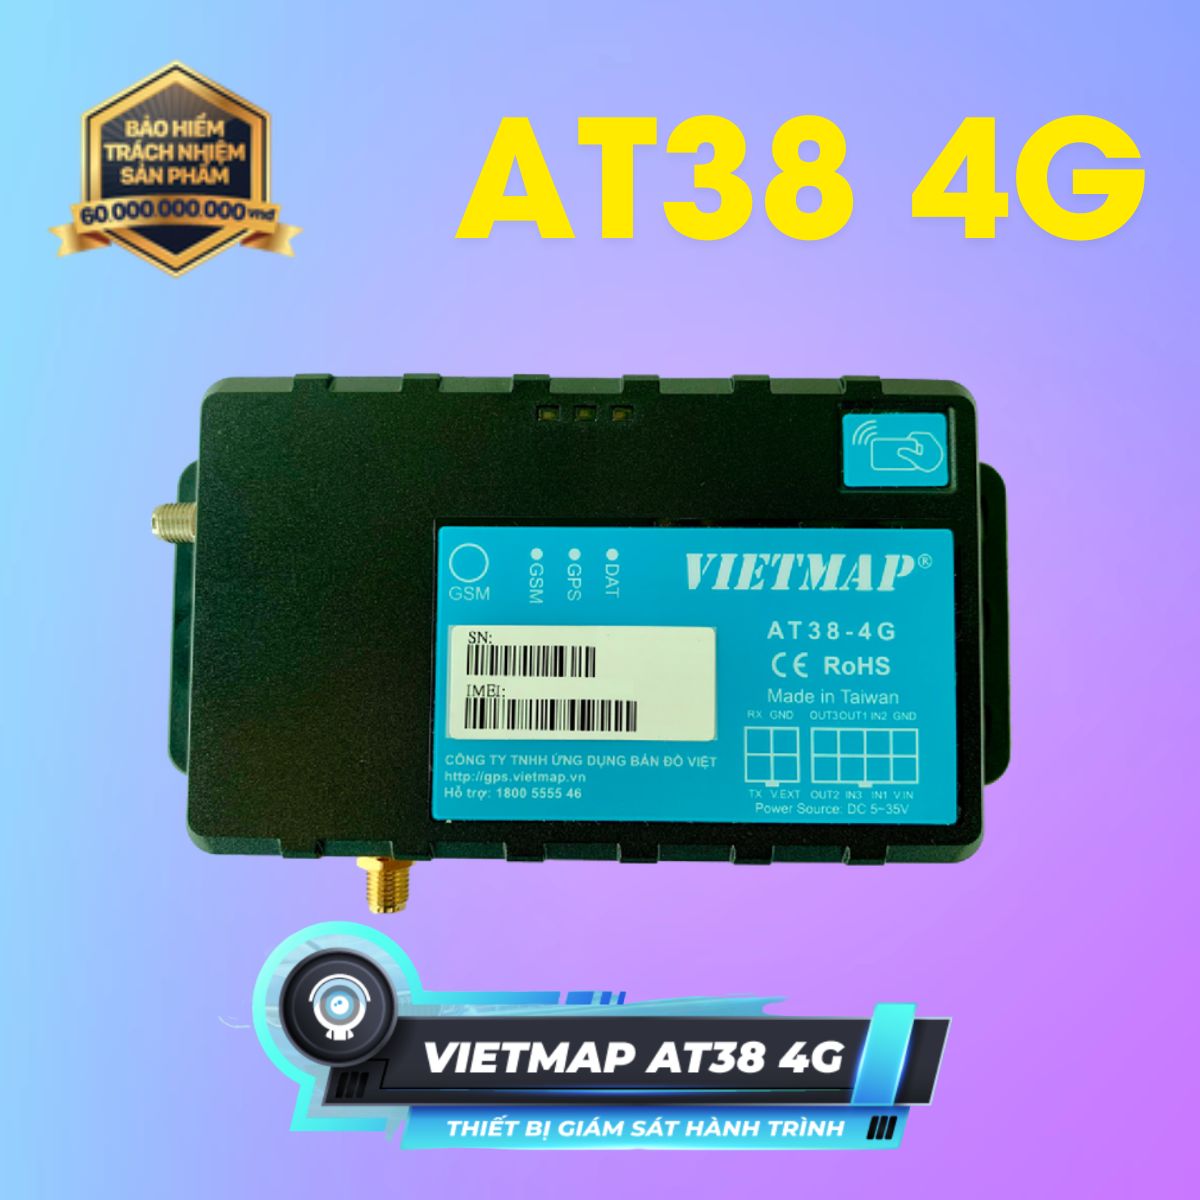 Hộp đen giám sát hành trình Vietmap AT38 4G kết nối cảm biến xăng dầu, nhiệt độ, cảm biến mở cửa